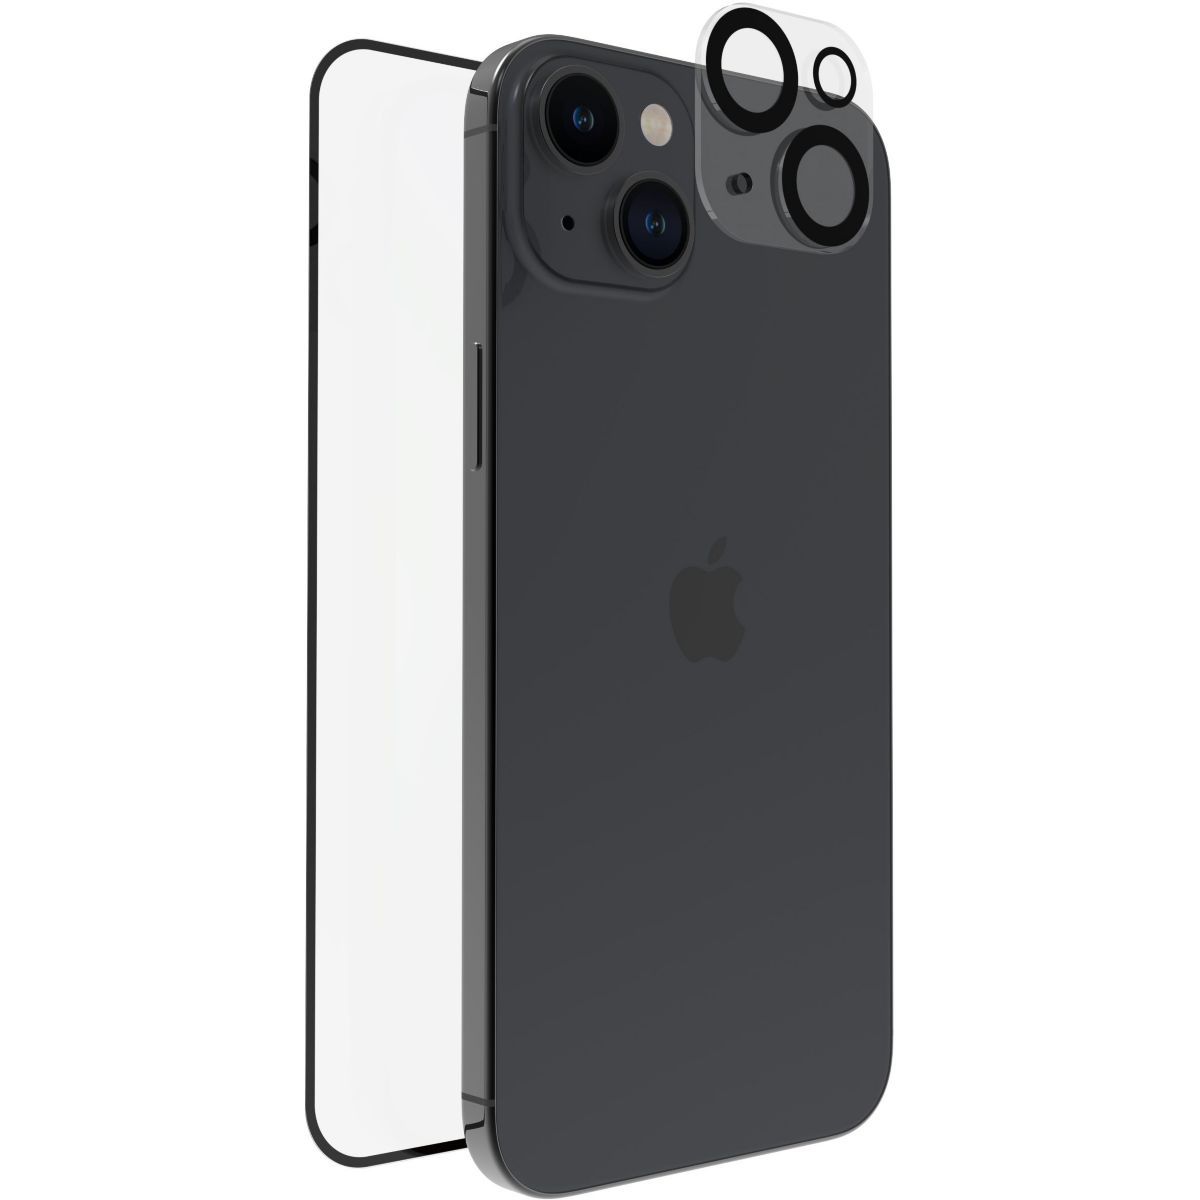 Accessoires compatible Apple iPhone 15 - ascendeo